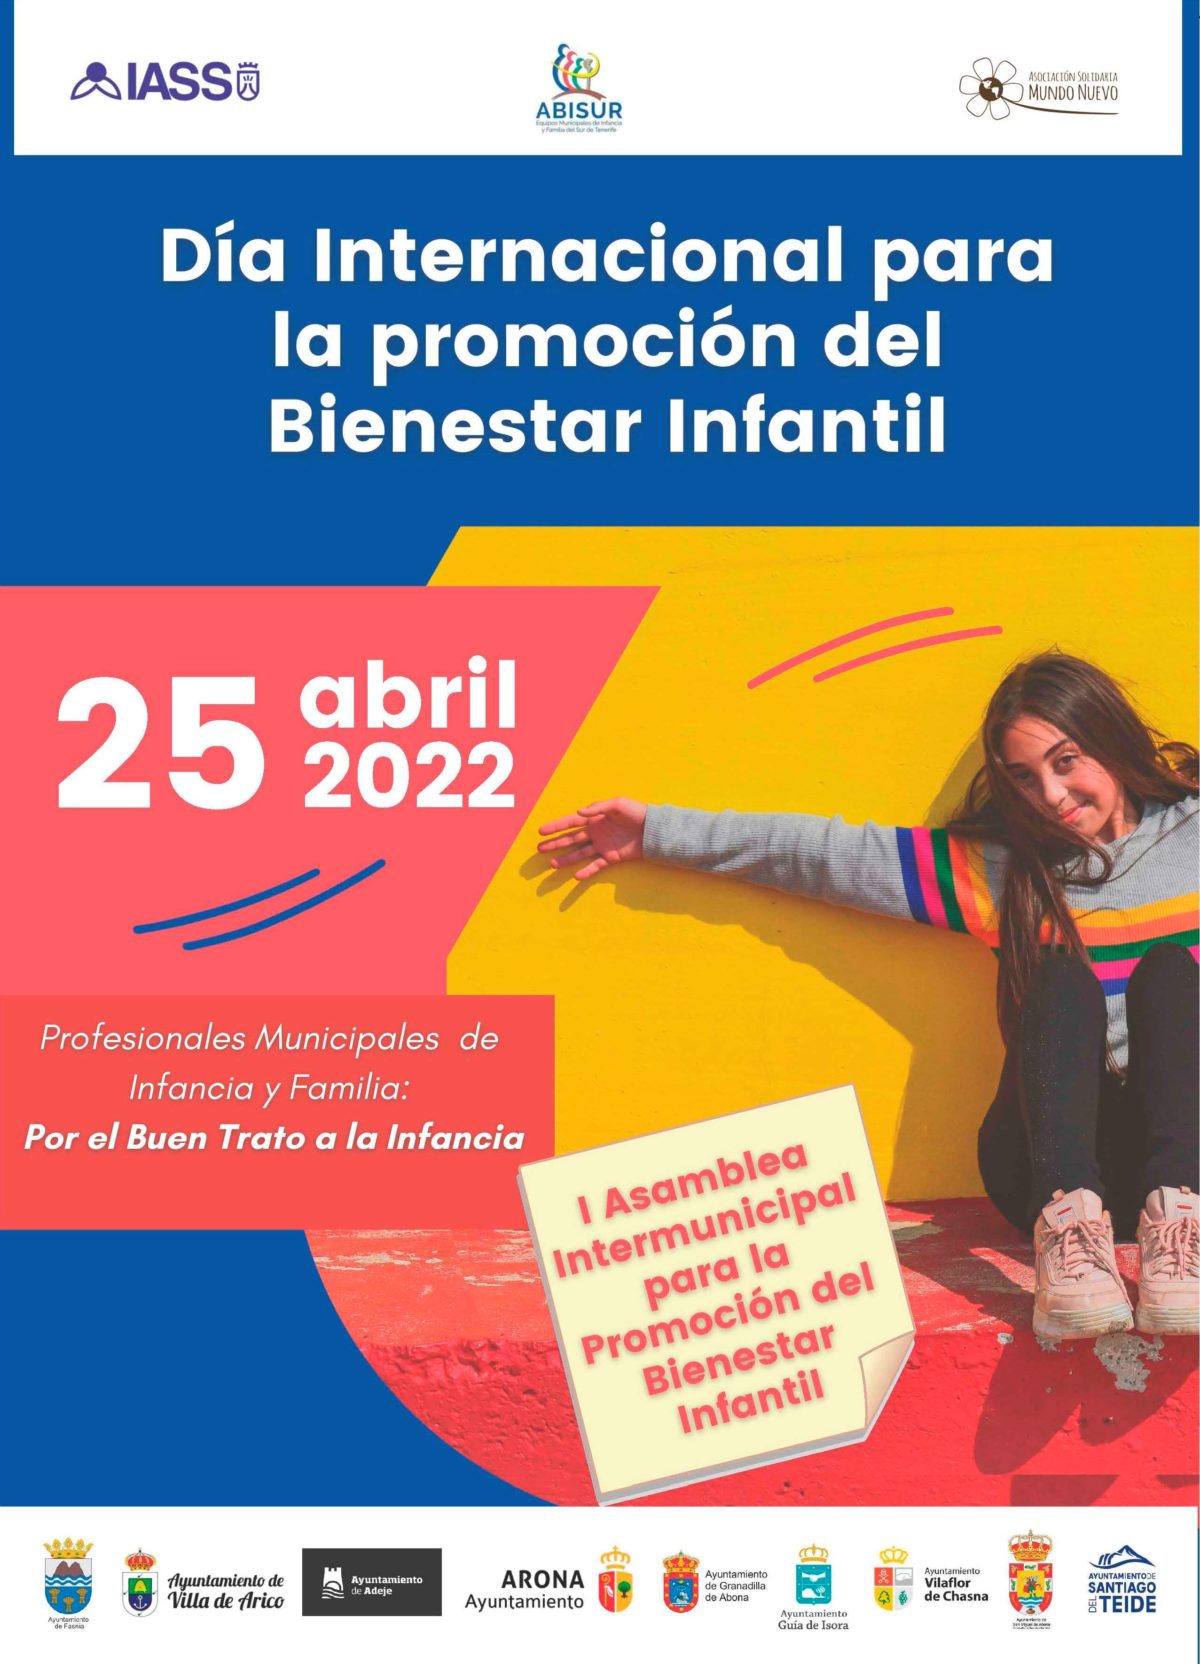 I Asamblea Intermunicipal para la promoción del Bienestar Infantil